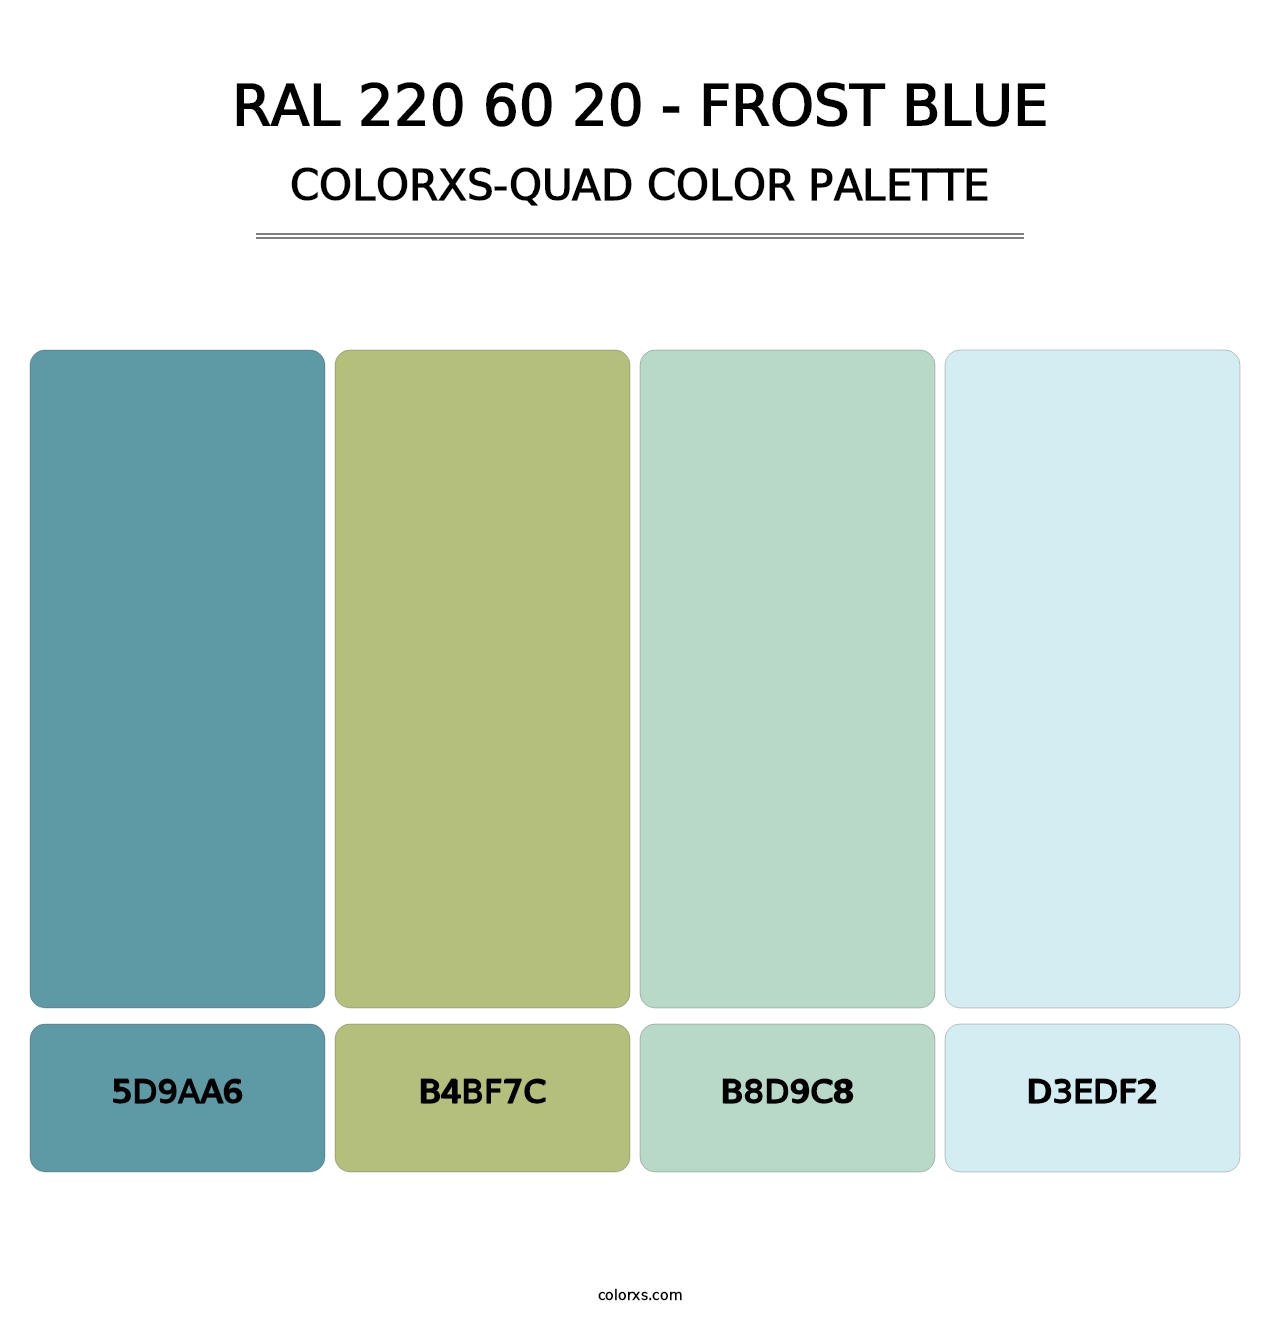 RAL 220 60 20 - Frost Blue - Colorxs Quad Palette